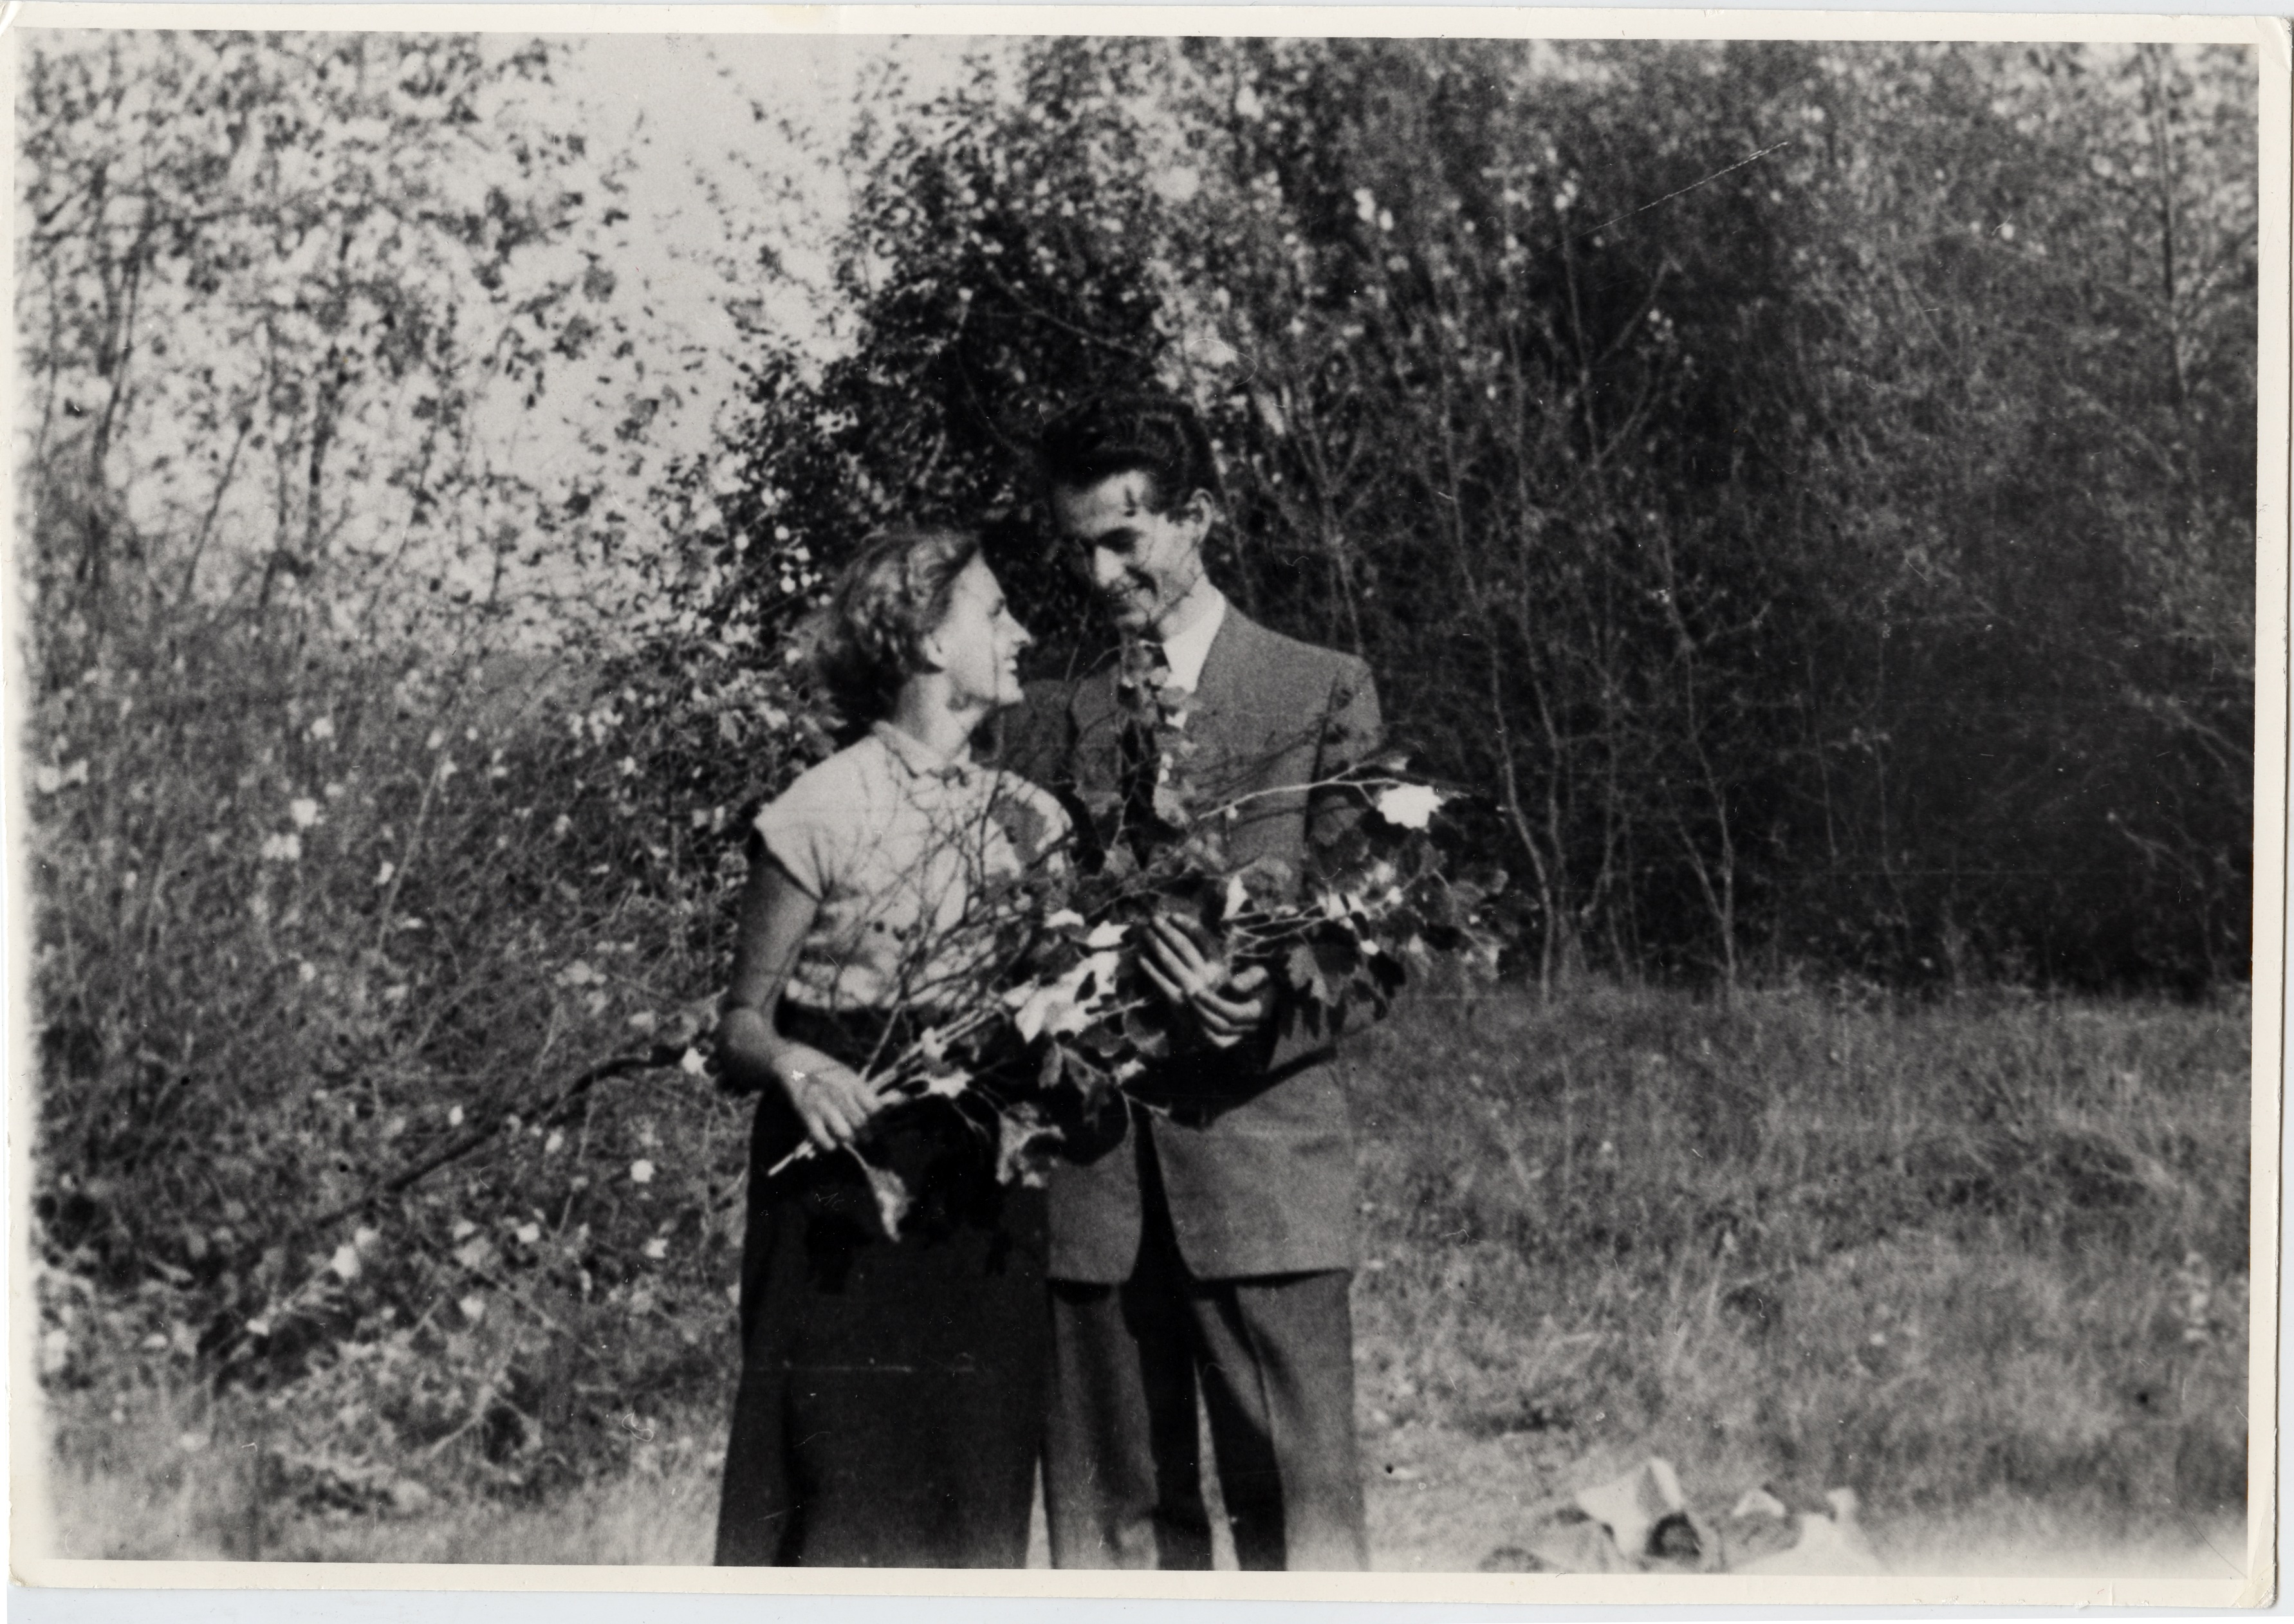 Wacława Stec i Wiesław Myśliwski w okresie narzeczeństwa, 1954, fot archiwum prywatne Wiesława Myśliwskiego